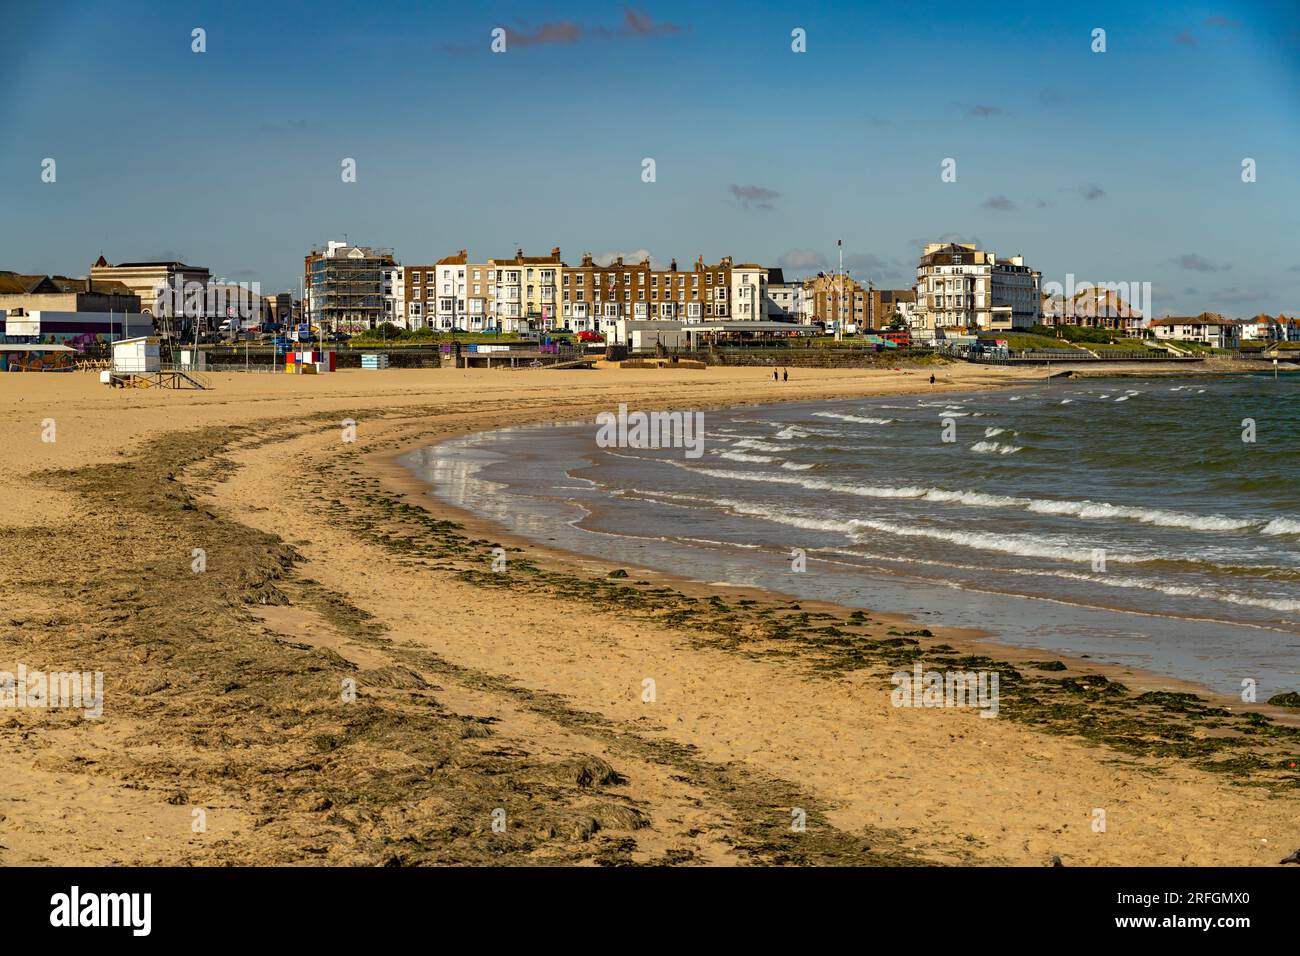 Der Strand von Margate, Kent, England, Großbritannien, Europa | Margate Beach, Kent, England, Vereinigtes Königreich Großbritannien, Europa Stockfoto